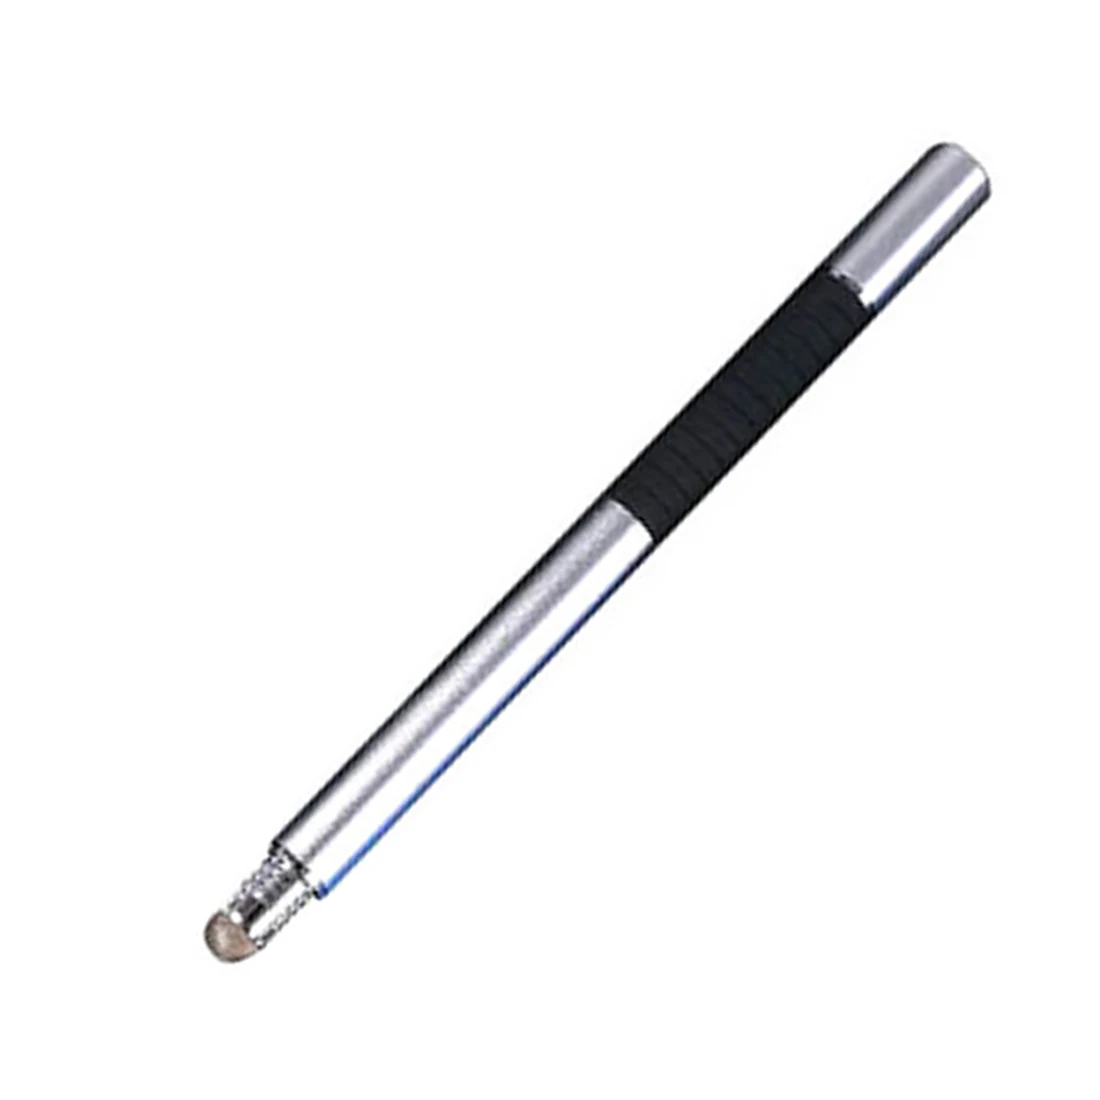 Etmakit Горячая емкостная ручка для рисования 2 в 1 емкостный сенсорный экран всенаправленная перспектива для iPad планшета